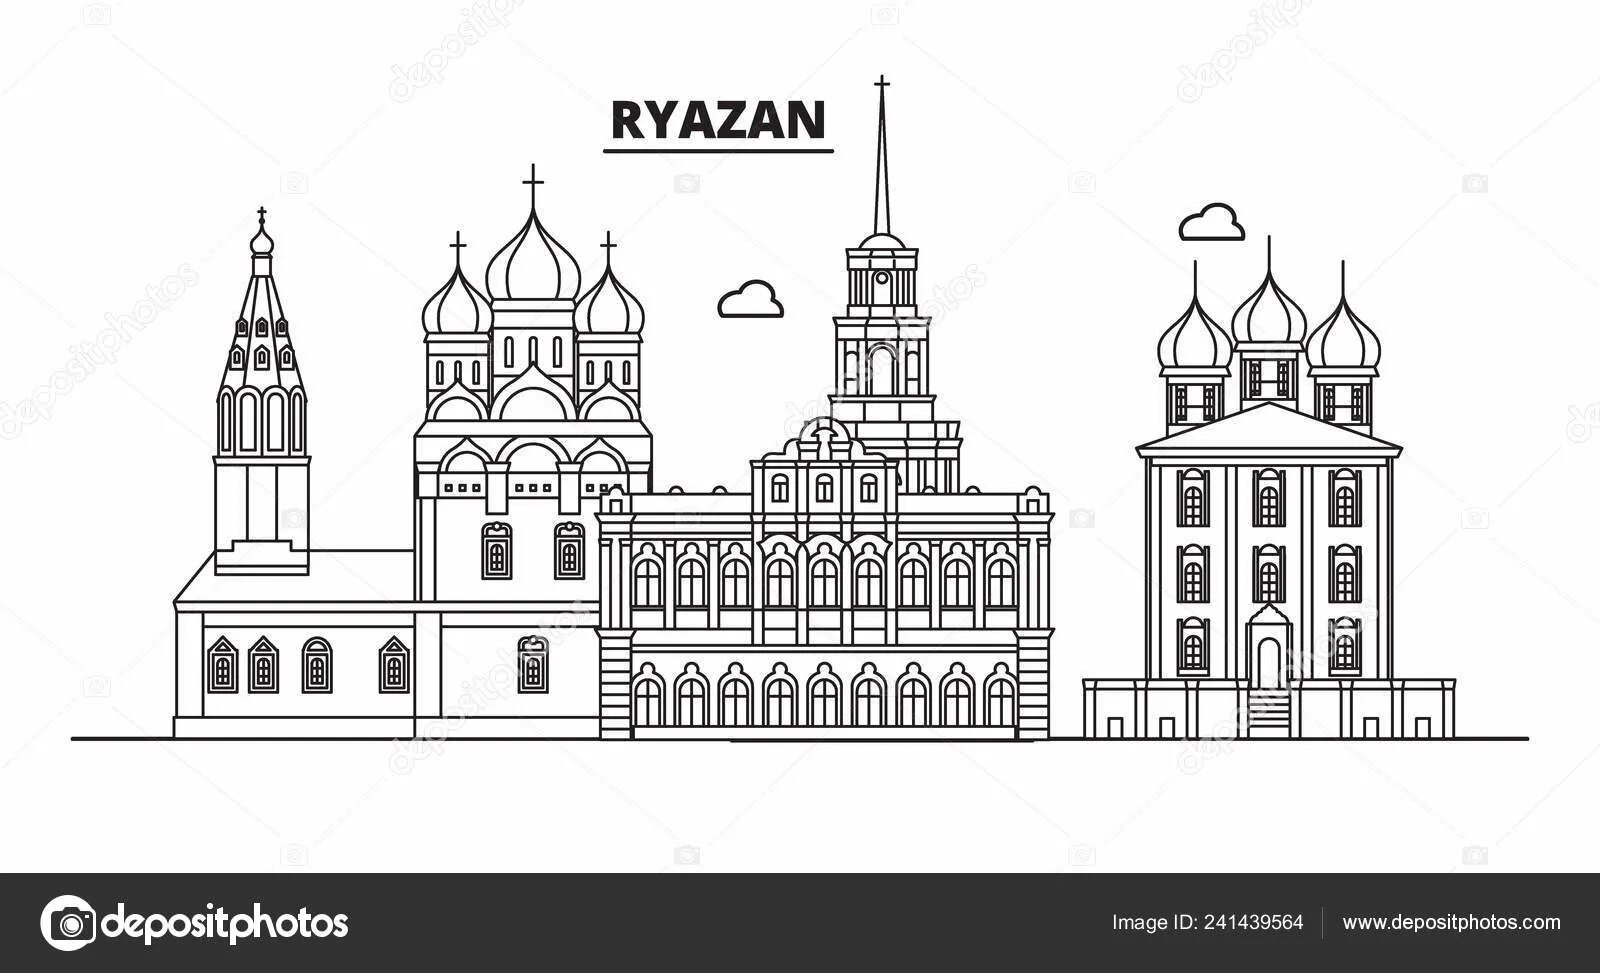 Ryazan #2